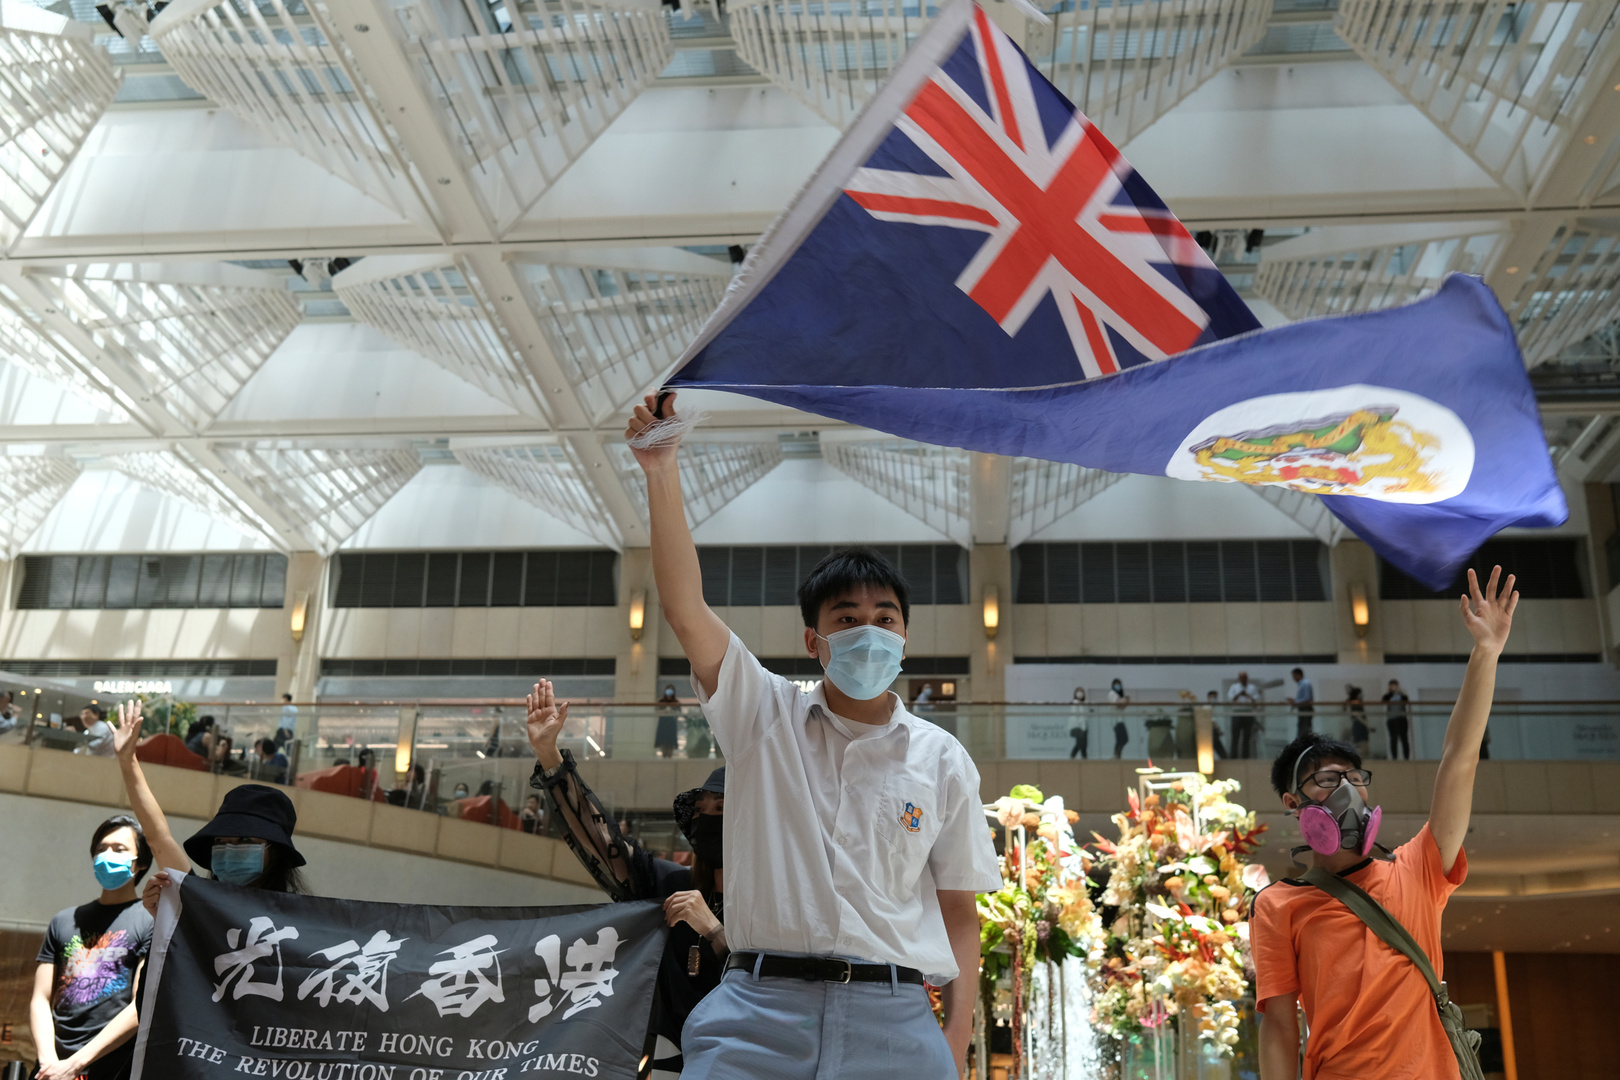 هونغ كونغ تجرب العقوبات – واشنطن تغادر المستعمرة البريطانية السابقة